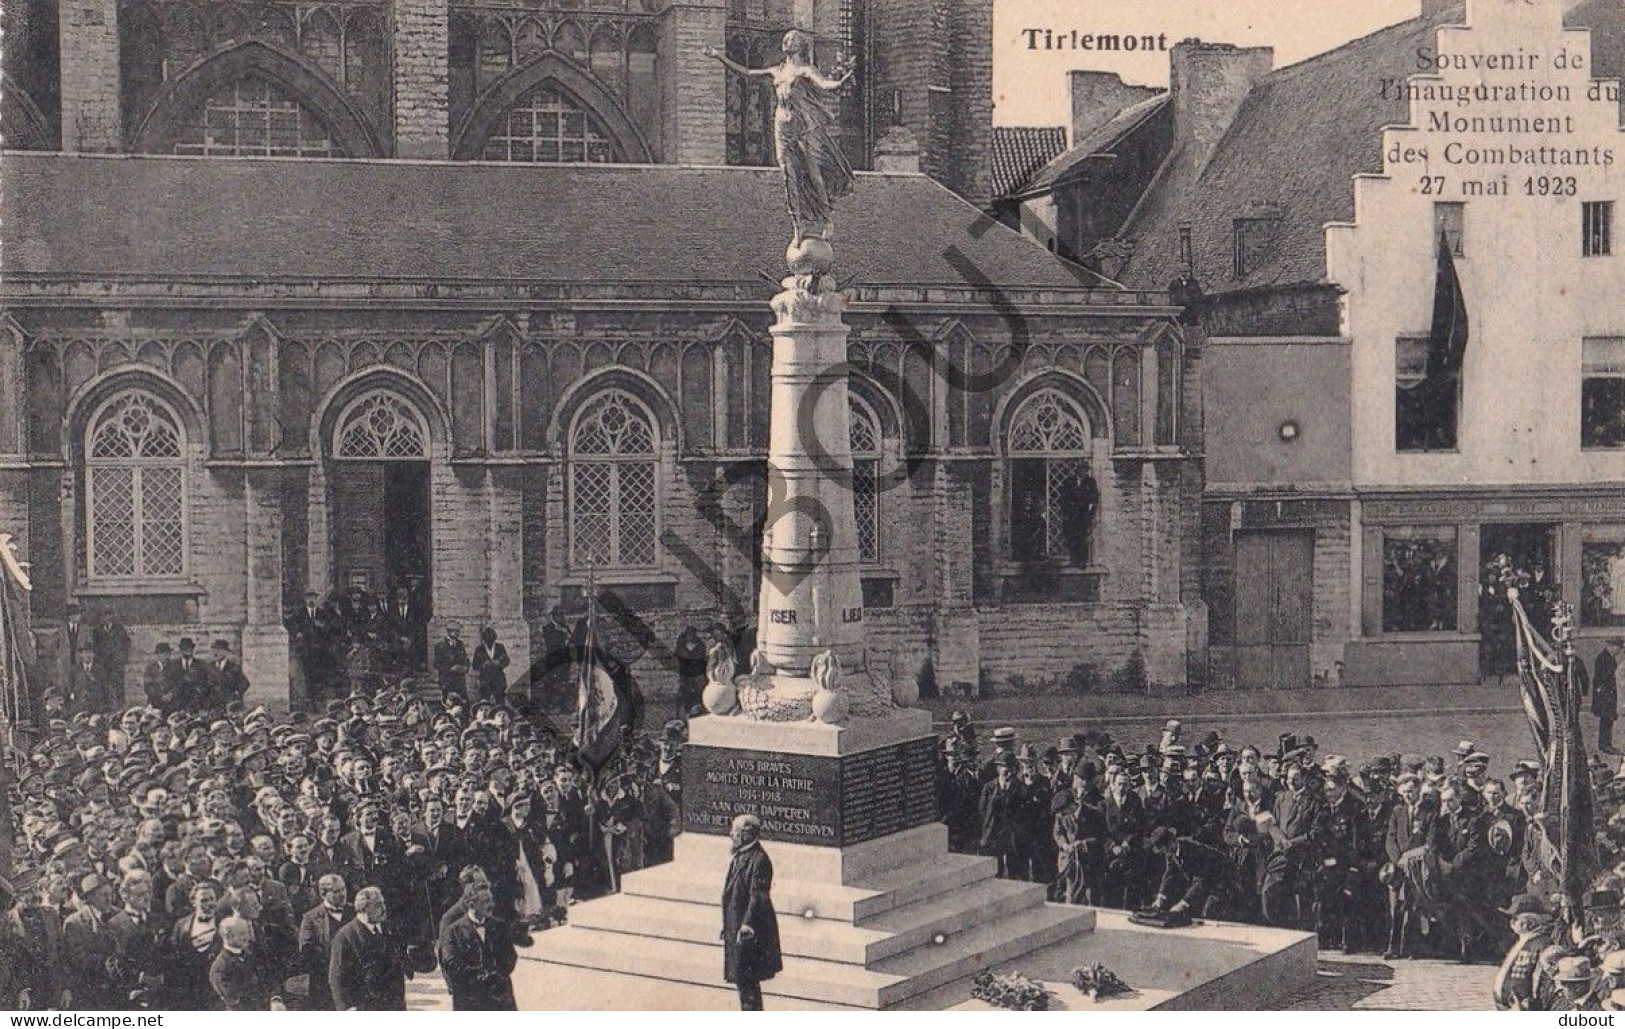 Postkaart - Carte Postale - Tienen/Tirlemont - Inauguration du Monument des Combattants 1923 12 kaarten!! (C5788)